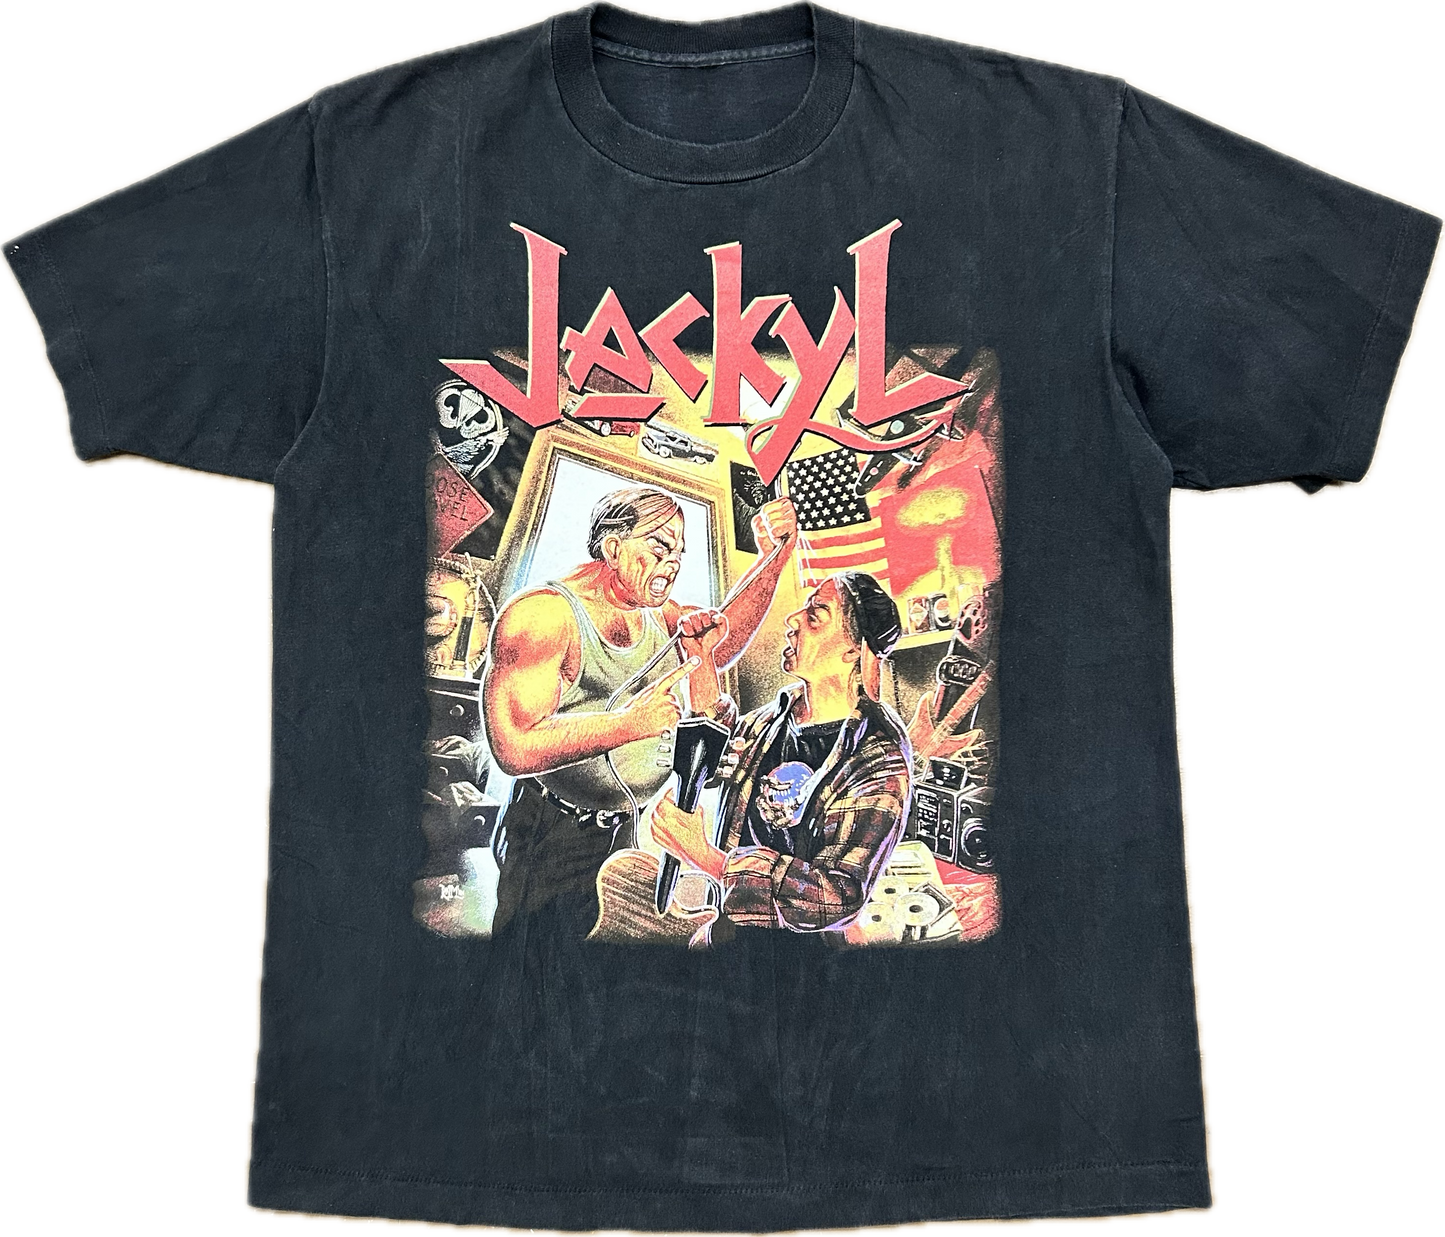 1994 Jackyl ‘Push Comes To Shove’ Tshirt Sz XL